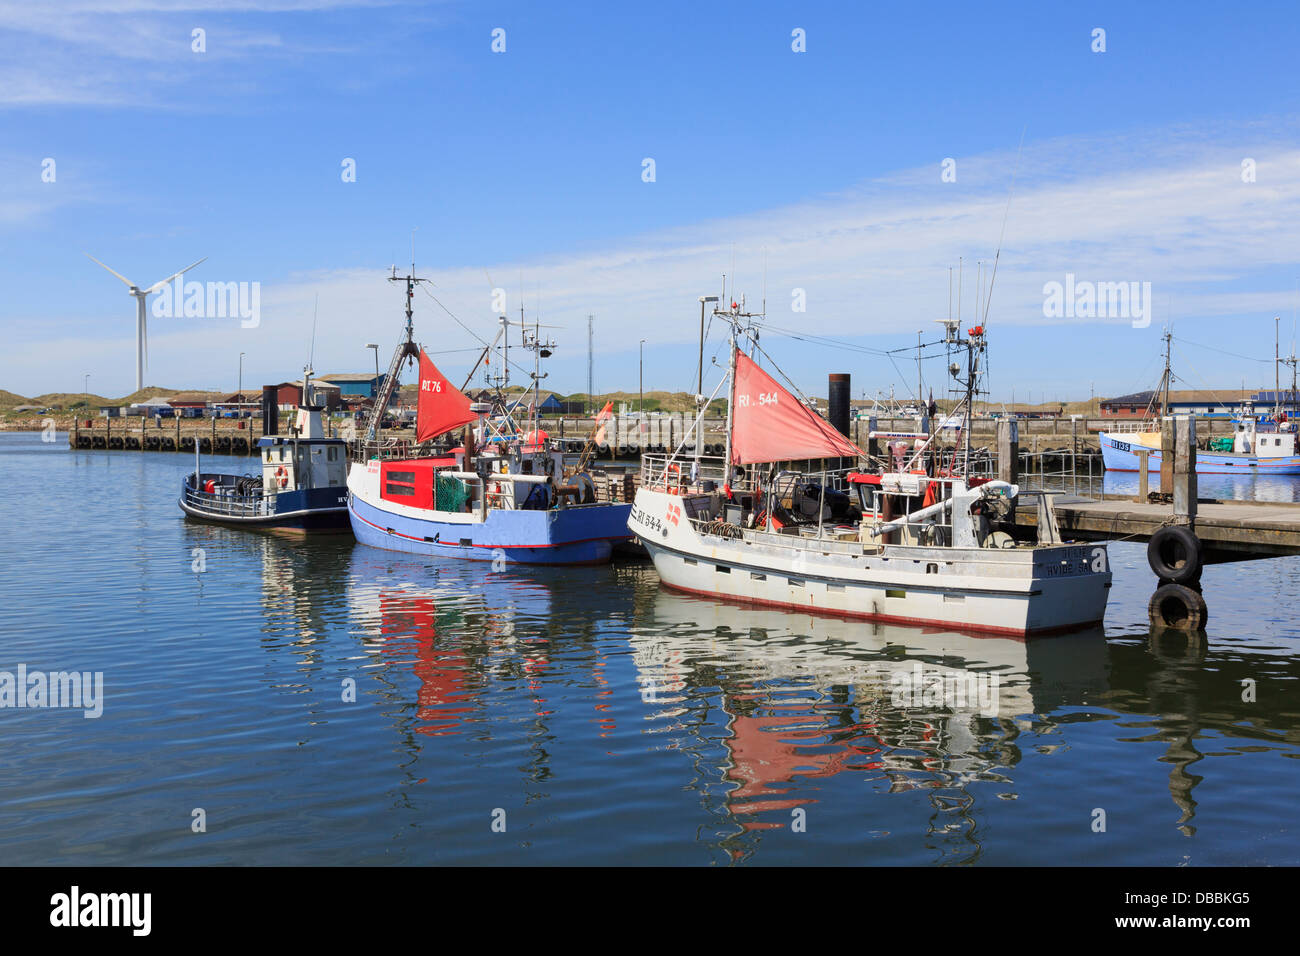 Bateaux amarrés dans le port de pêche sur la côte ouest à Hvide Sande, centre du Jutland, Danemark, Scandinavie Banque D'Images